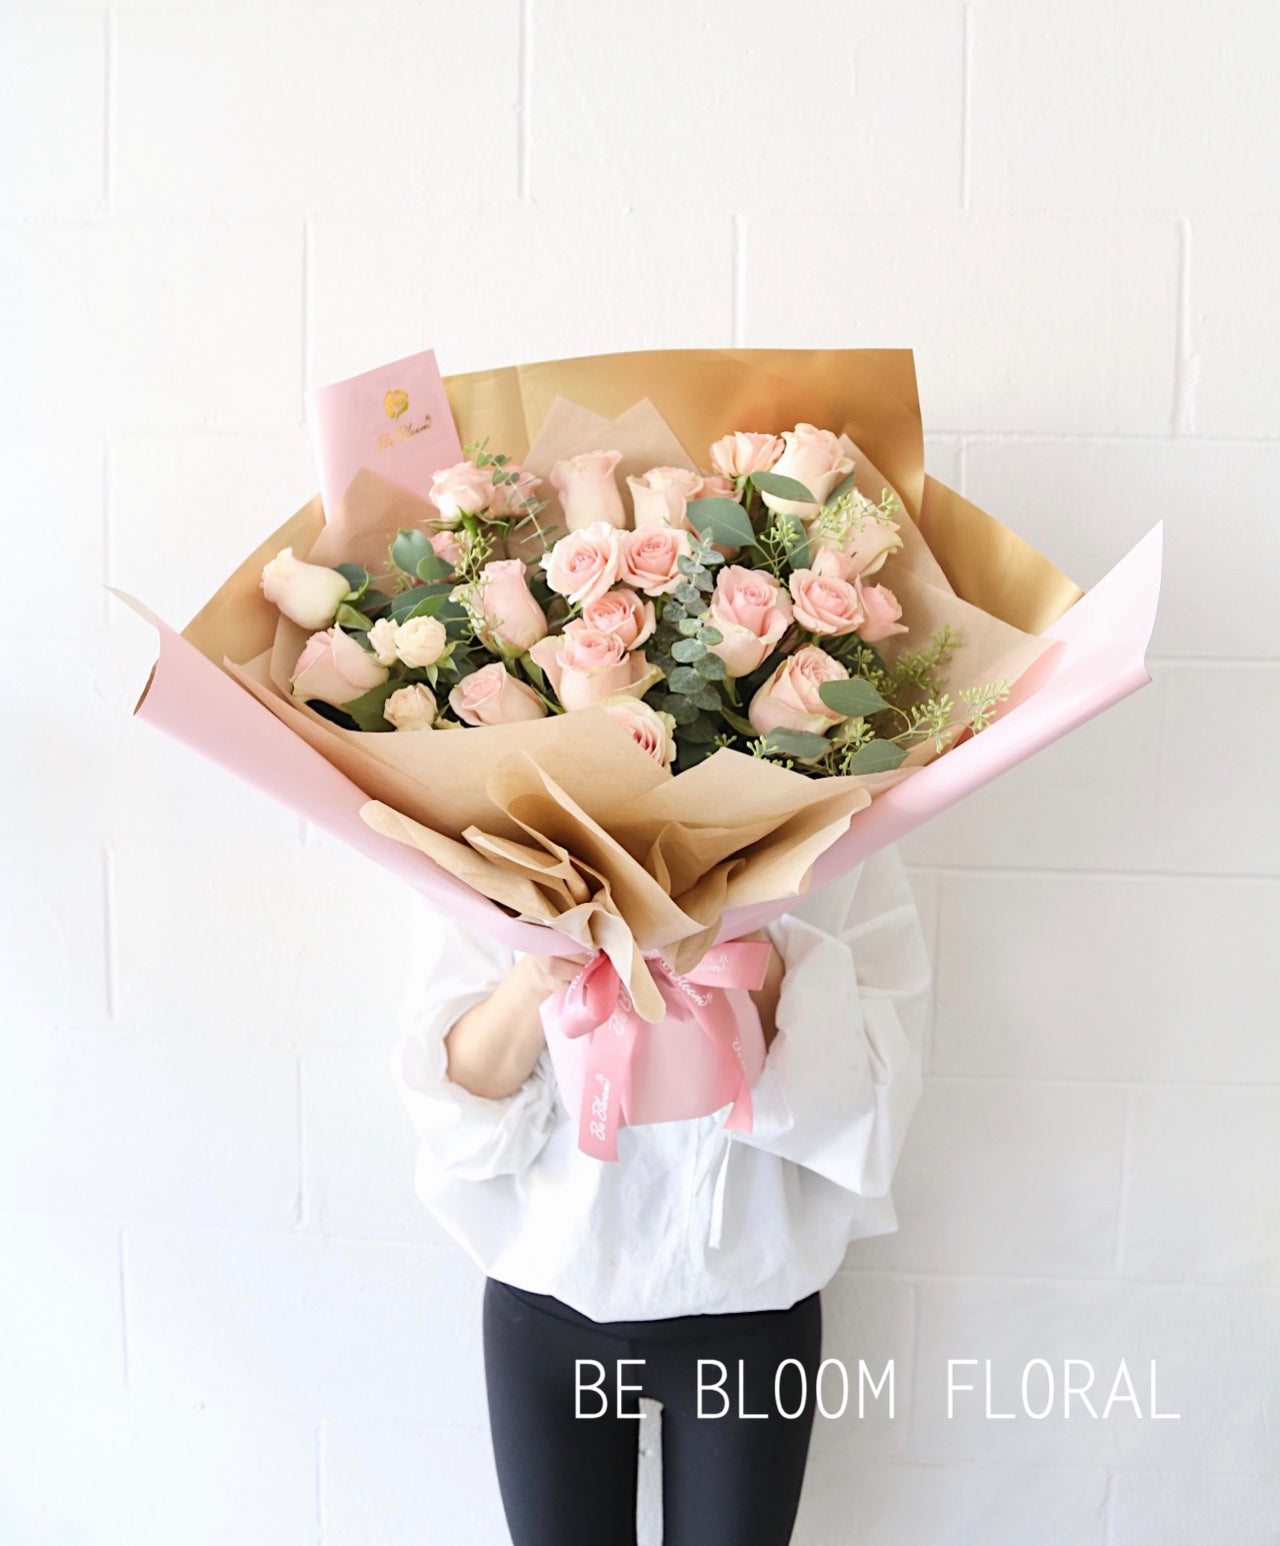 Be Bloom signature Rose Dozen